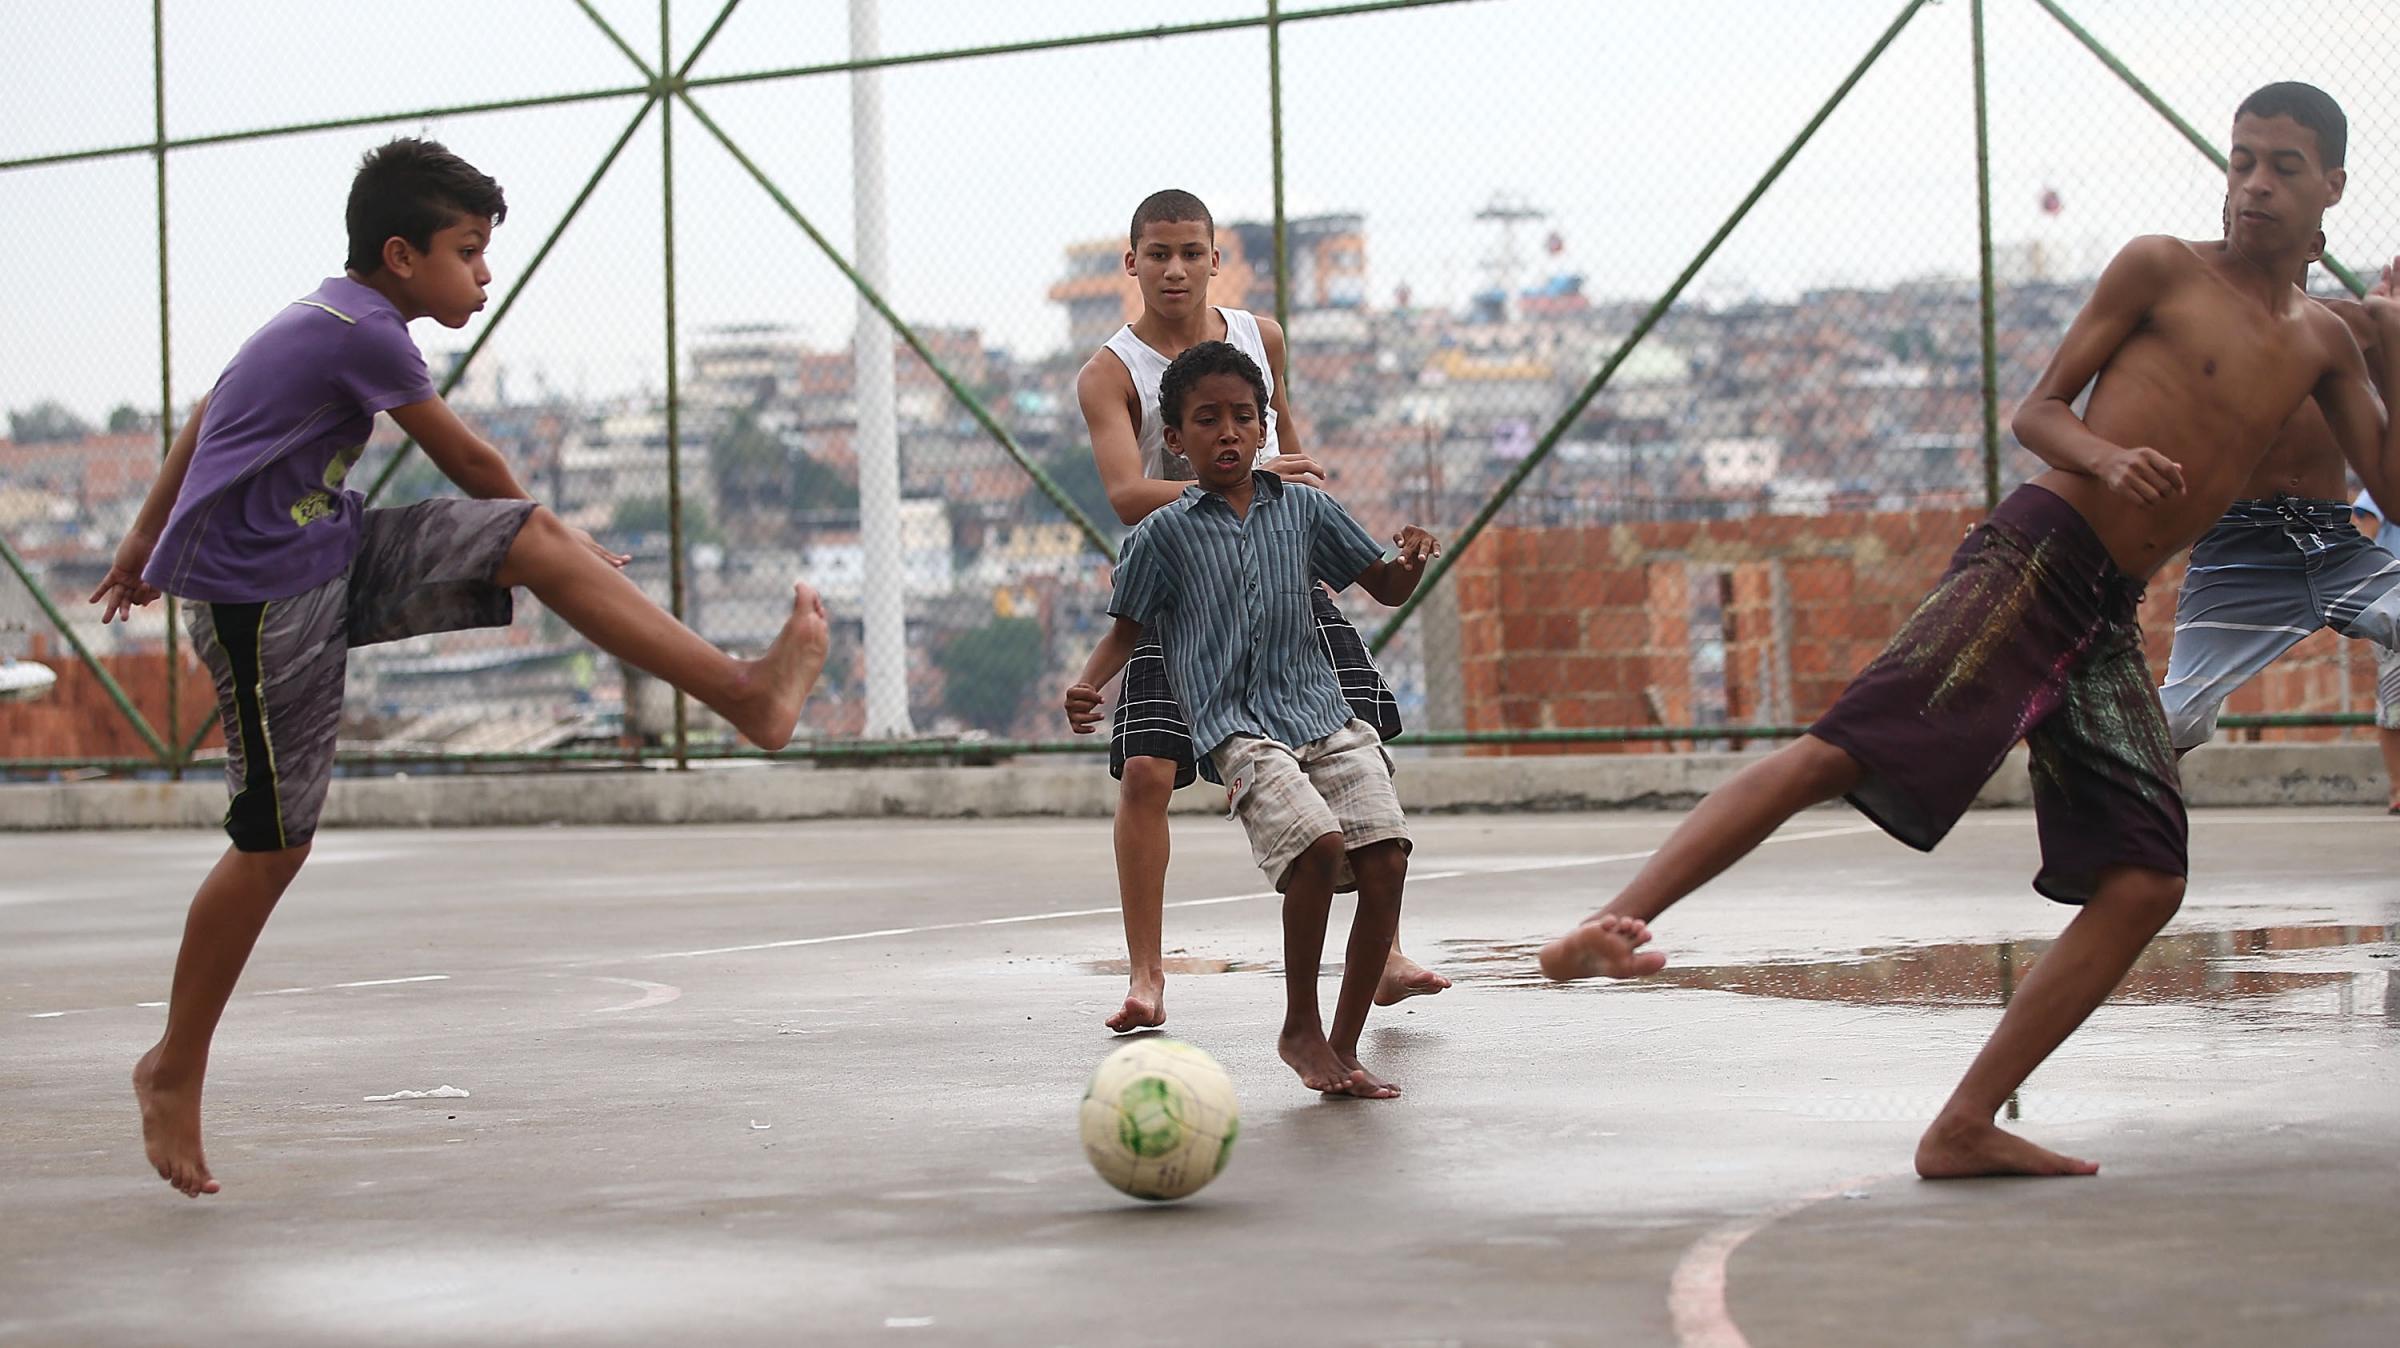 For Brazil's Soccer Stars, Careers Often Begin On Makeshift Fields